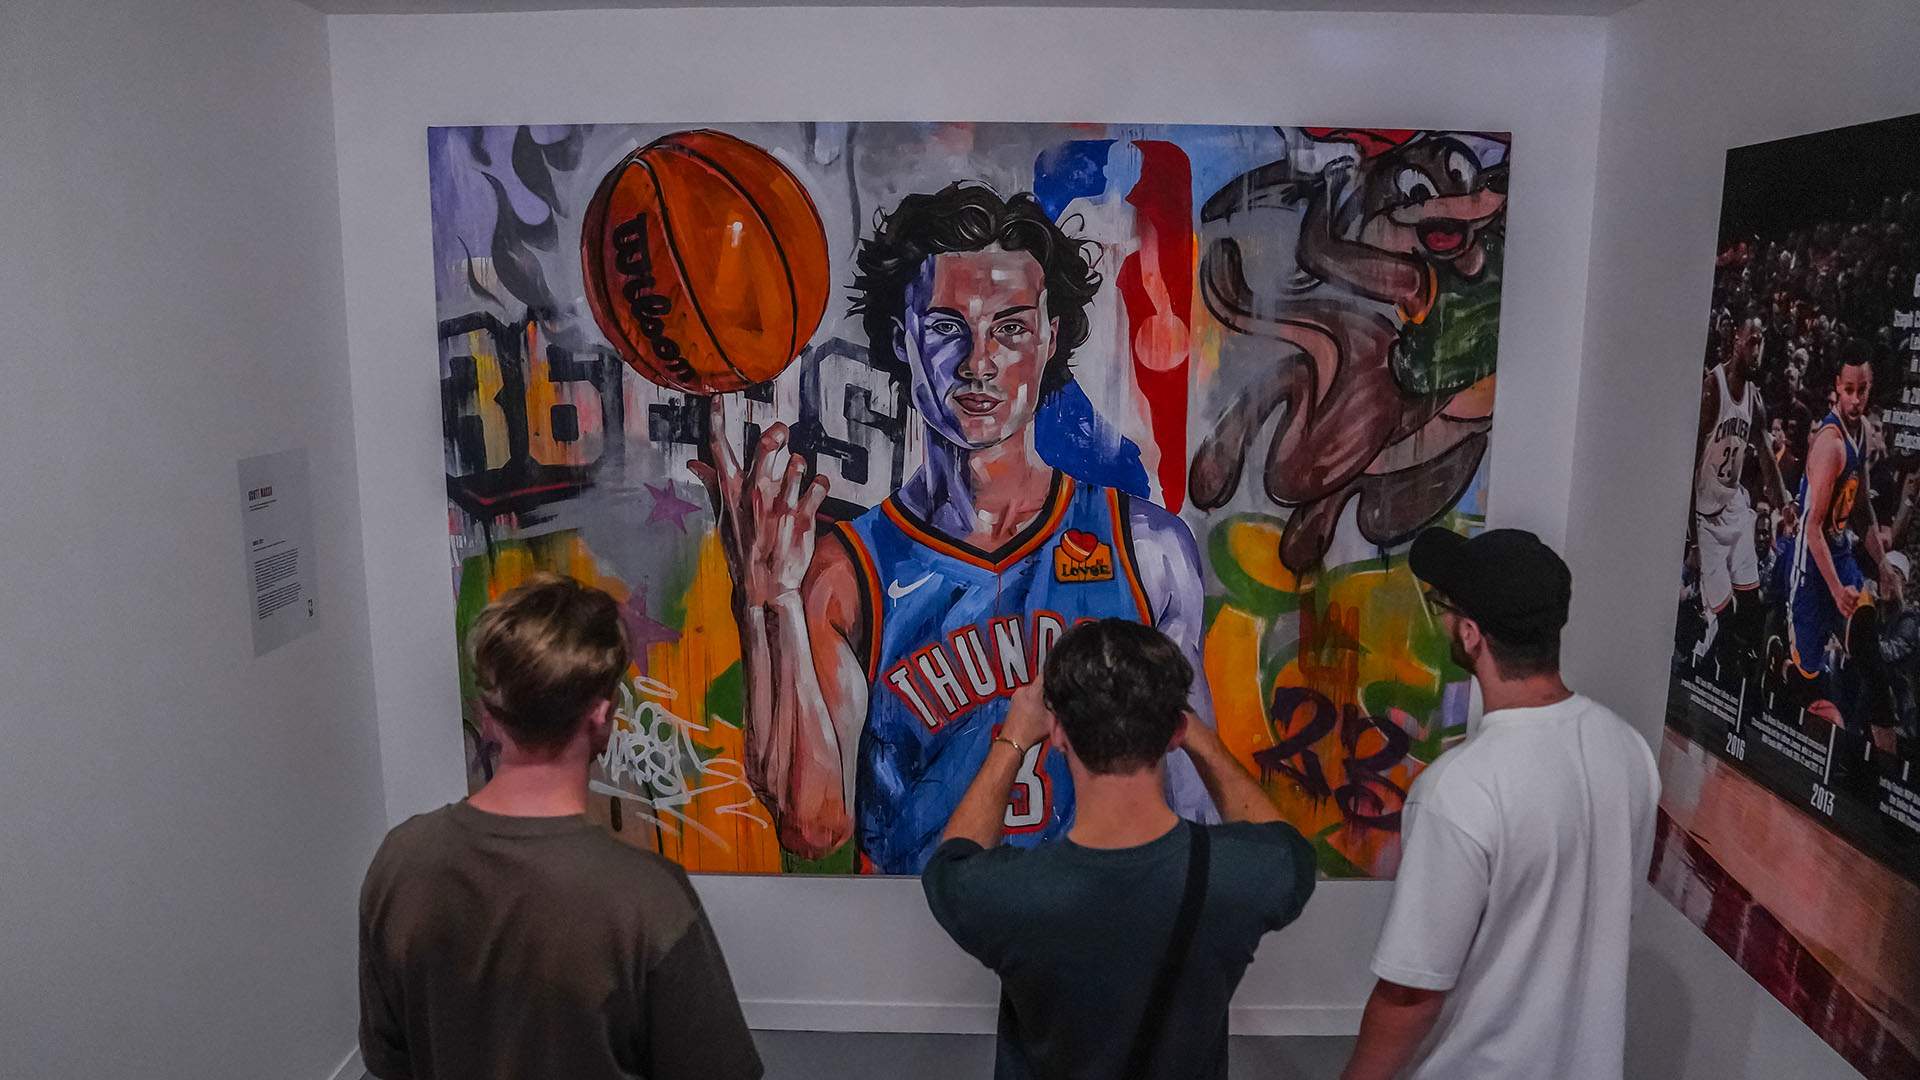 The NBA Exhibition